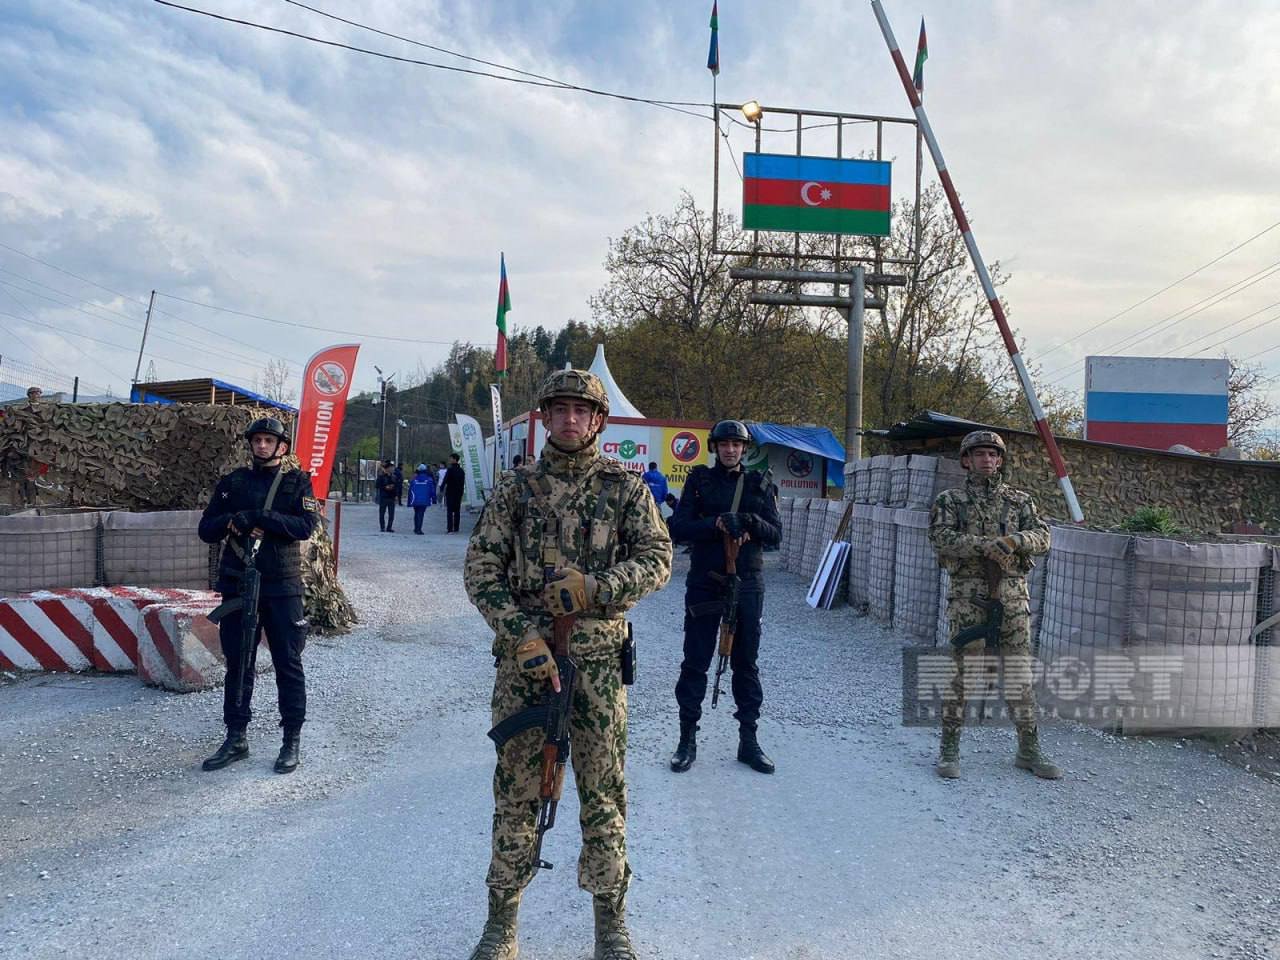 Azerbajdžanskí aktivisti ukončili blokádu v Náhornom Karabachu, keďže Baku uťahuje kontrolu nad regiónom